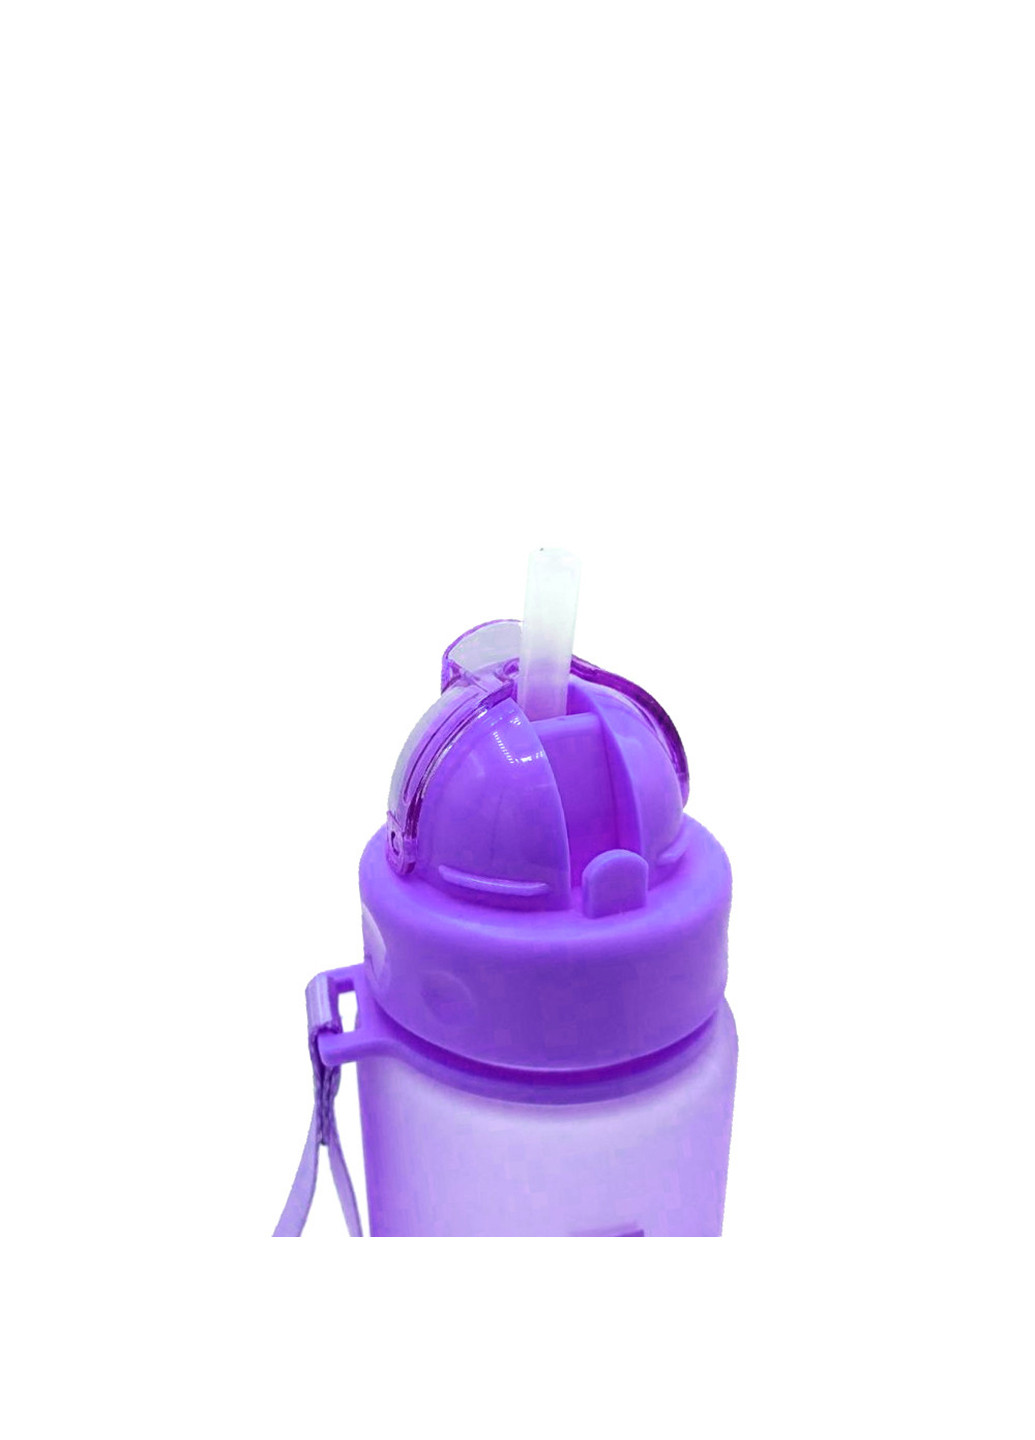 Спортивная бутылка для воды 560 Casno (242188127)